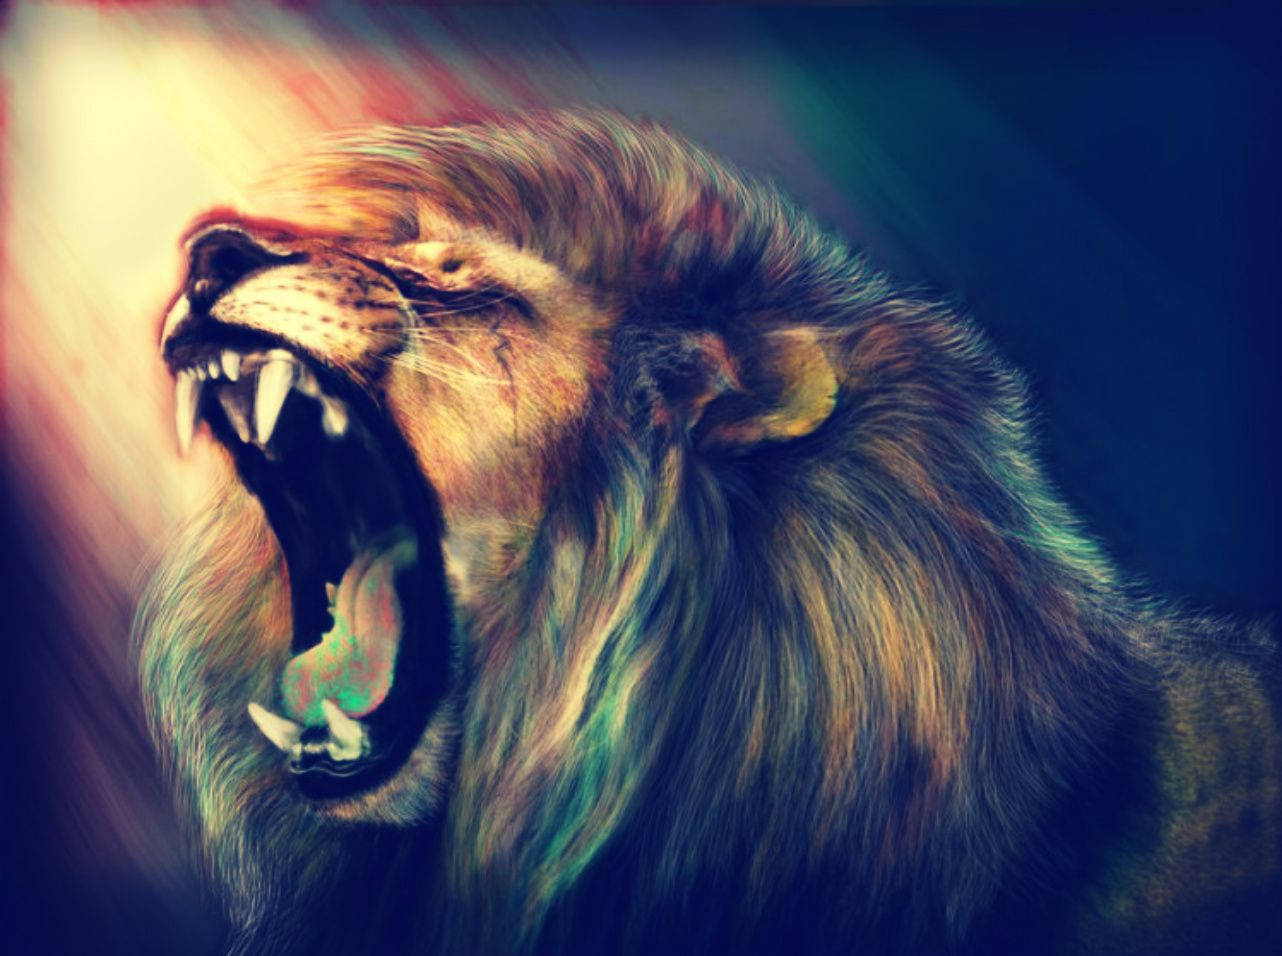 Lion 1282X956 wallpaper